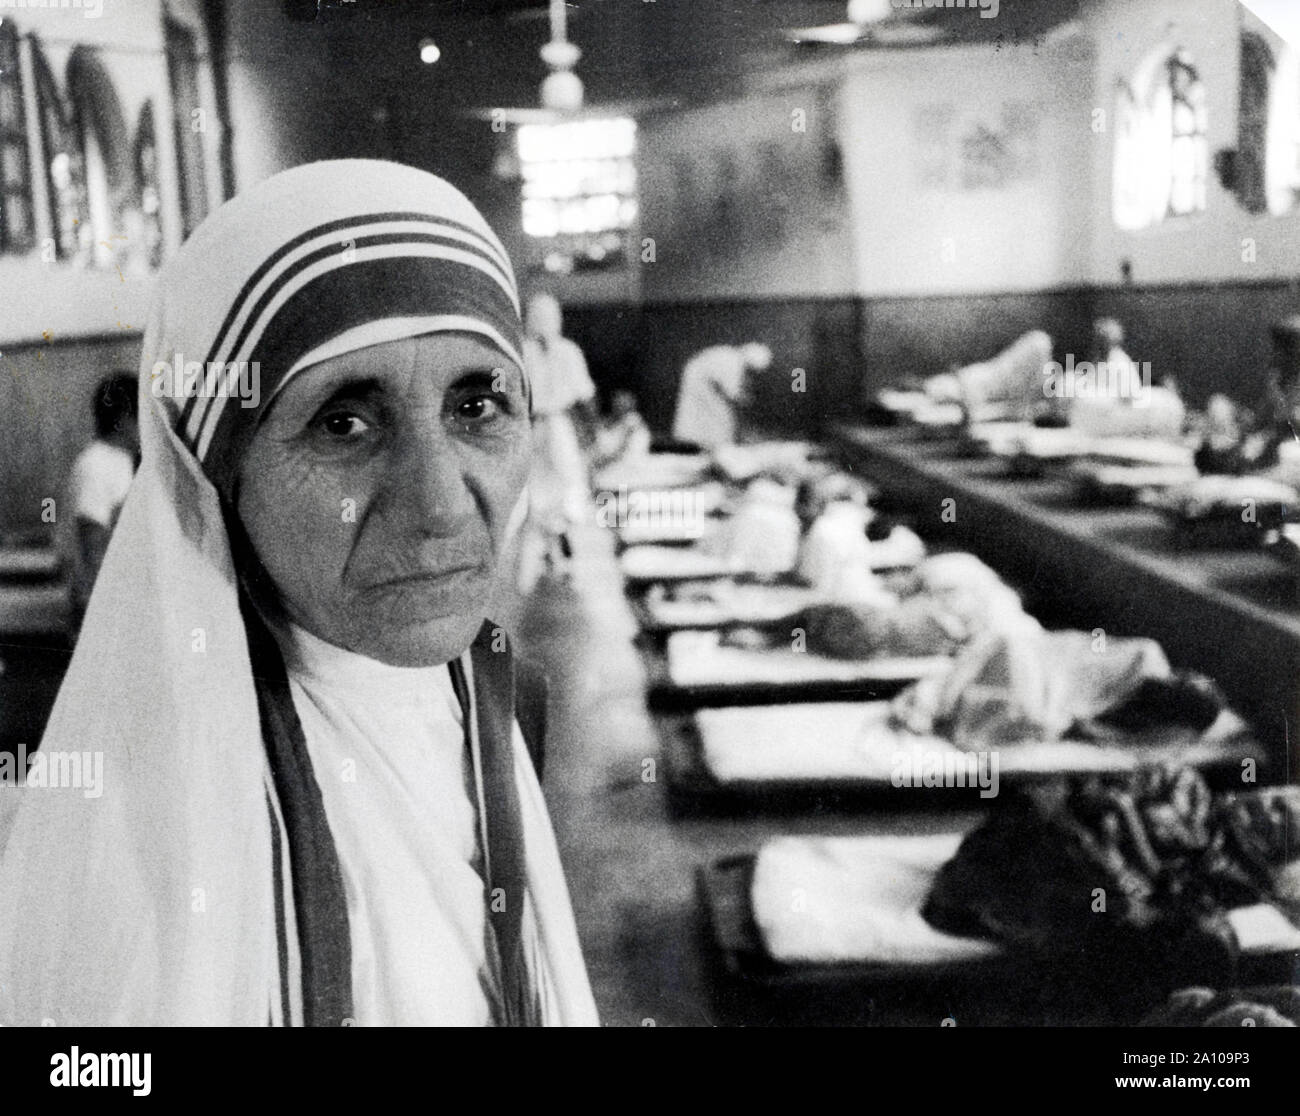 1973 - Calcutta, Inde - une religieuse catholique albanaise, MÈRE TERESA (AGNES Gonxha Bojaxhiu), fondé les Missionnaires de la Charité à Kolkata (Calcutta), Inde, les ministres pour les pauvres, malades, orphelins, et de mourir. Mère Teresa guide l'expansion de missionnaires de la charité. Mère Teresa a reçu le Prix Templeton pour le progrès. (Crédit Image : © Keystone Press Agency/Keystone USA par ZUMAPRESS.com) Banque D'Images